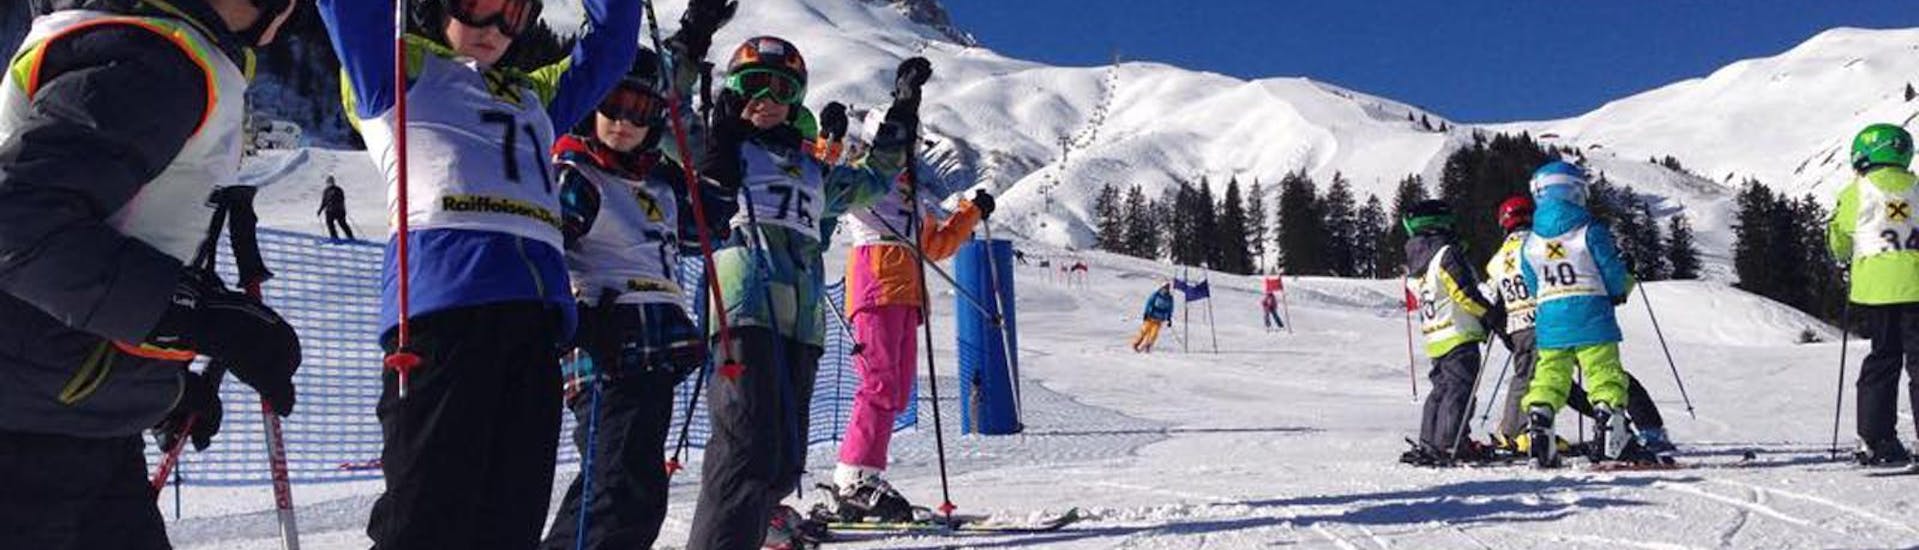 Un groupe d'enfants applaudit pendant leurs Cours de ski Enfants (5-14 ans) pour Débutants avec Ski School Warth.